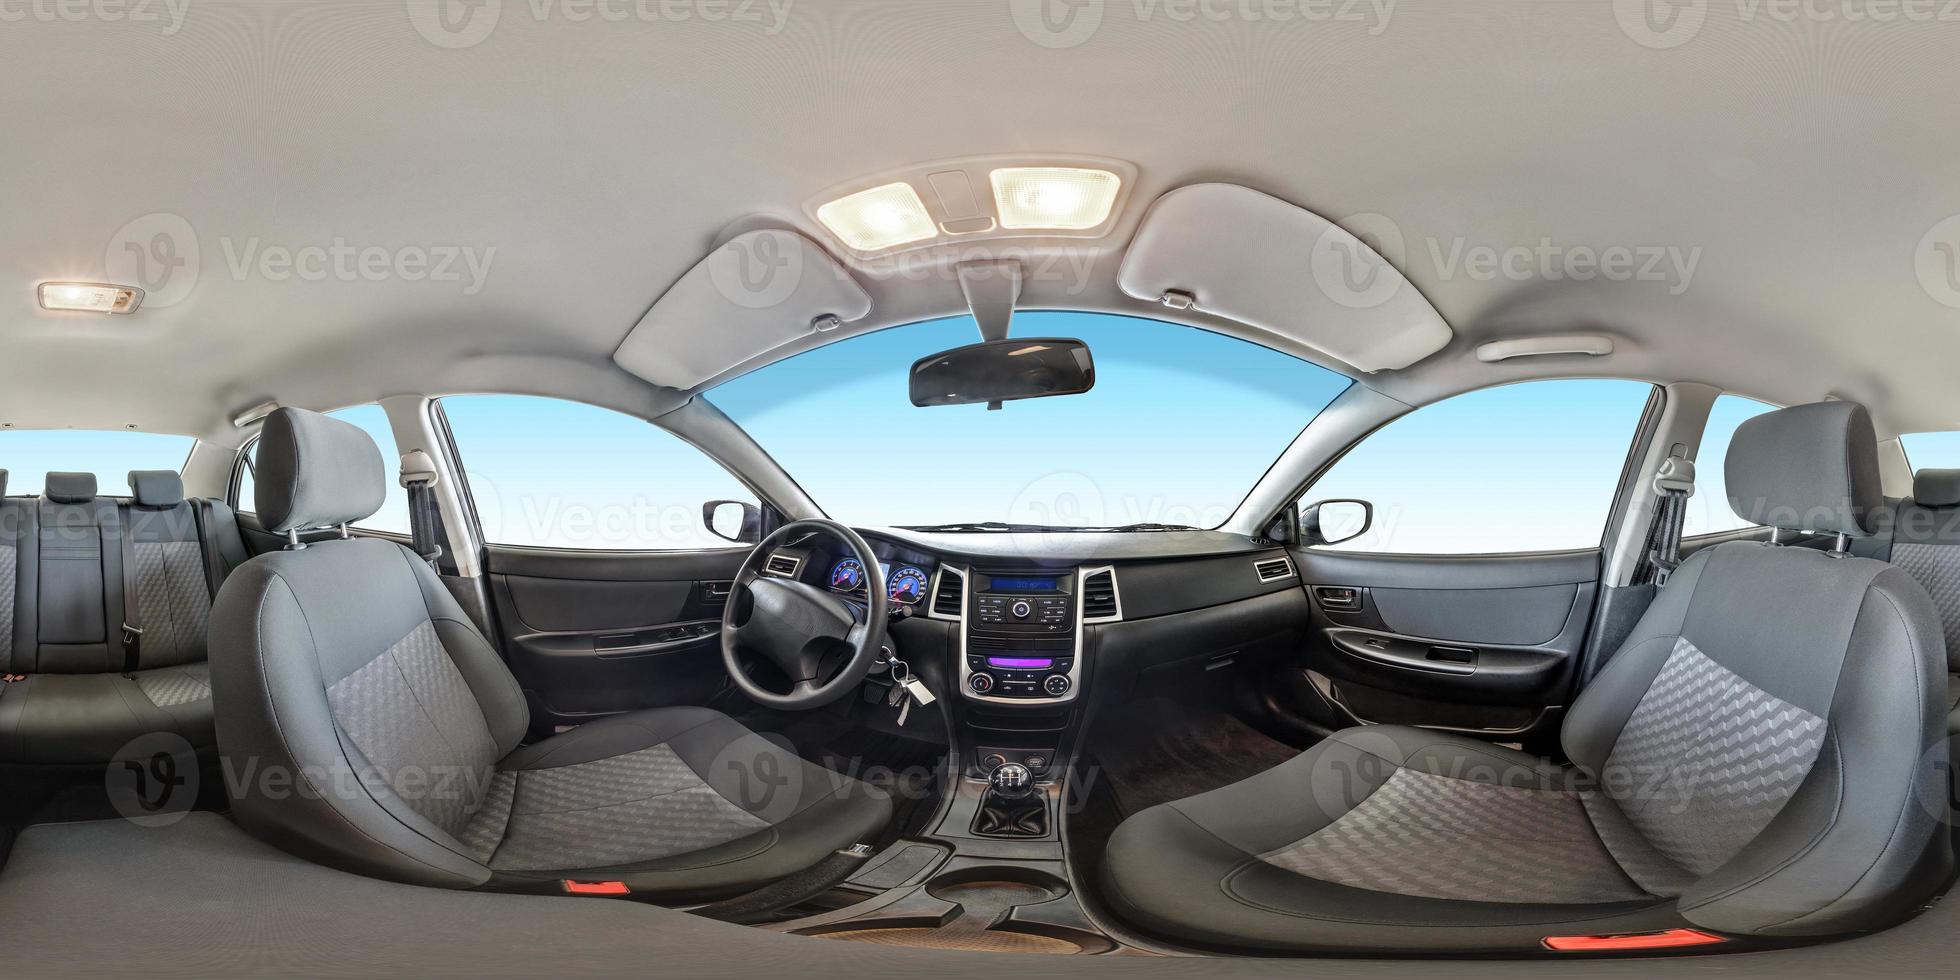 panorama completo e senza cuciture vista angolare a 360 gradi nel salone interno del tessuto di un'auto moderna di prestigio in proiezione sferica equidistante equirettangolare. skybox per contenuti vr ar foto